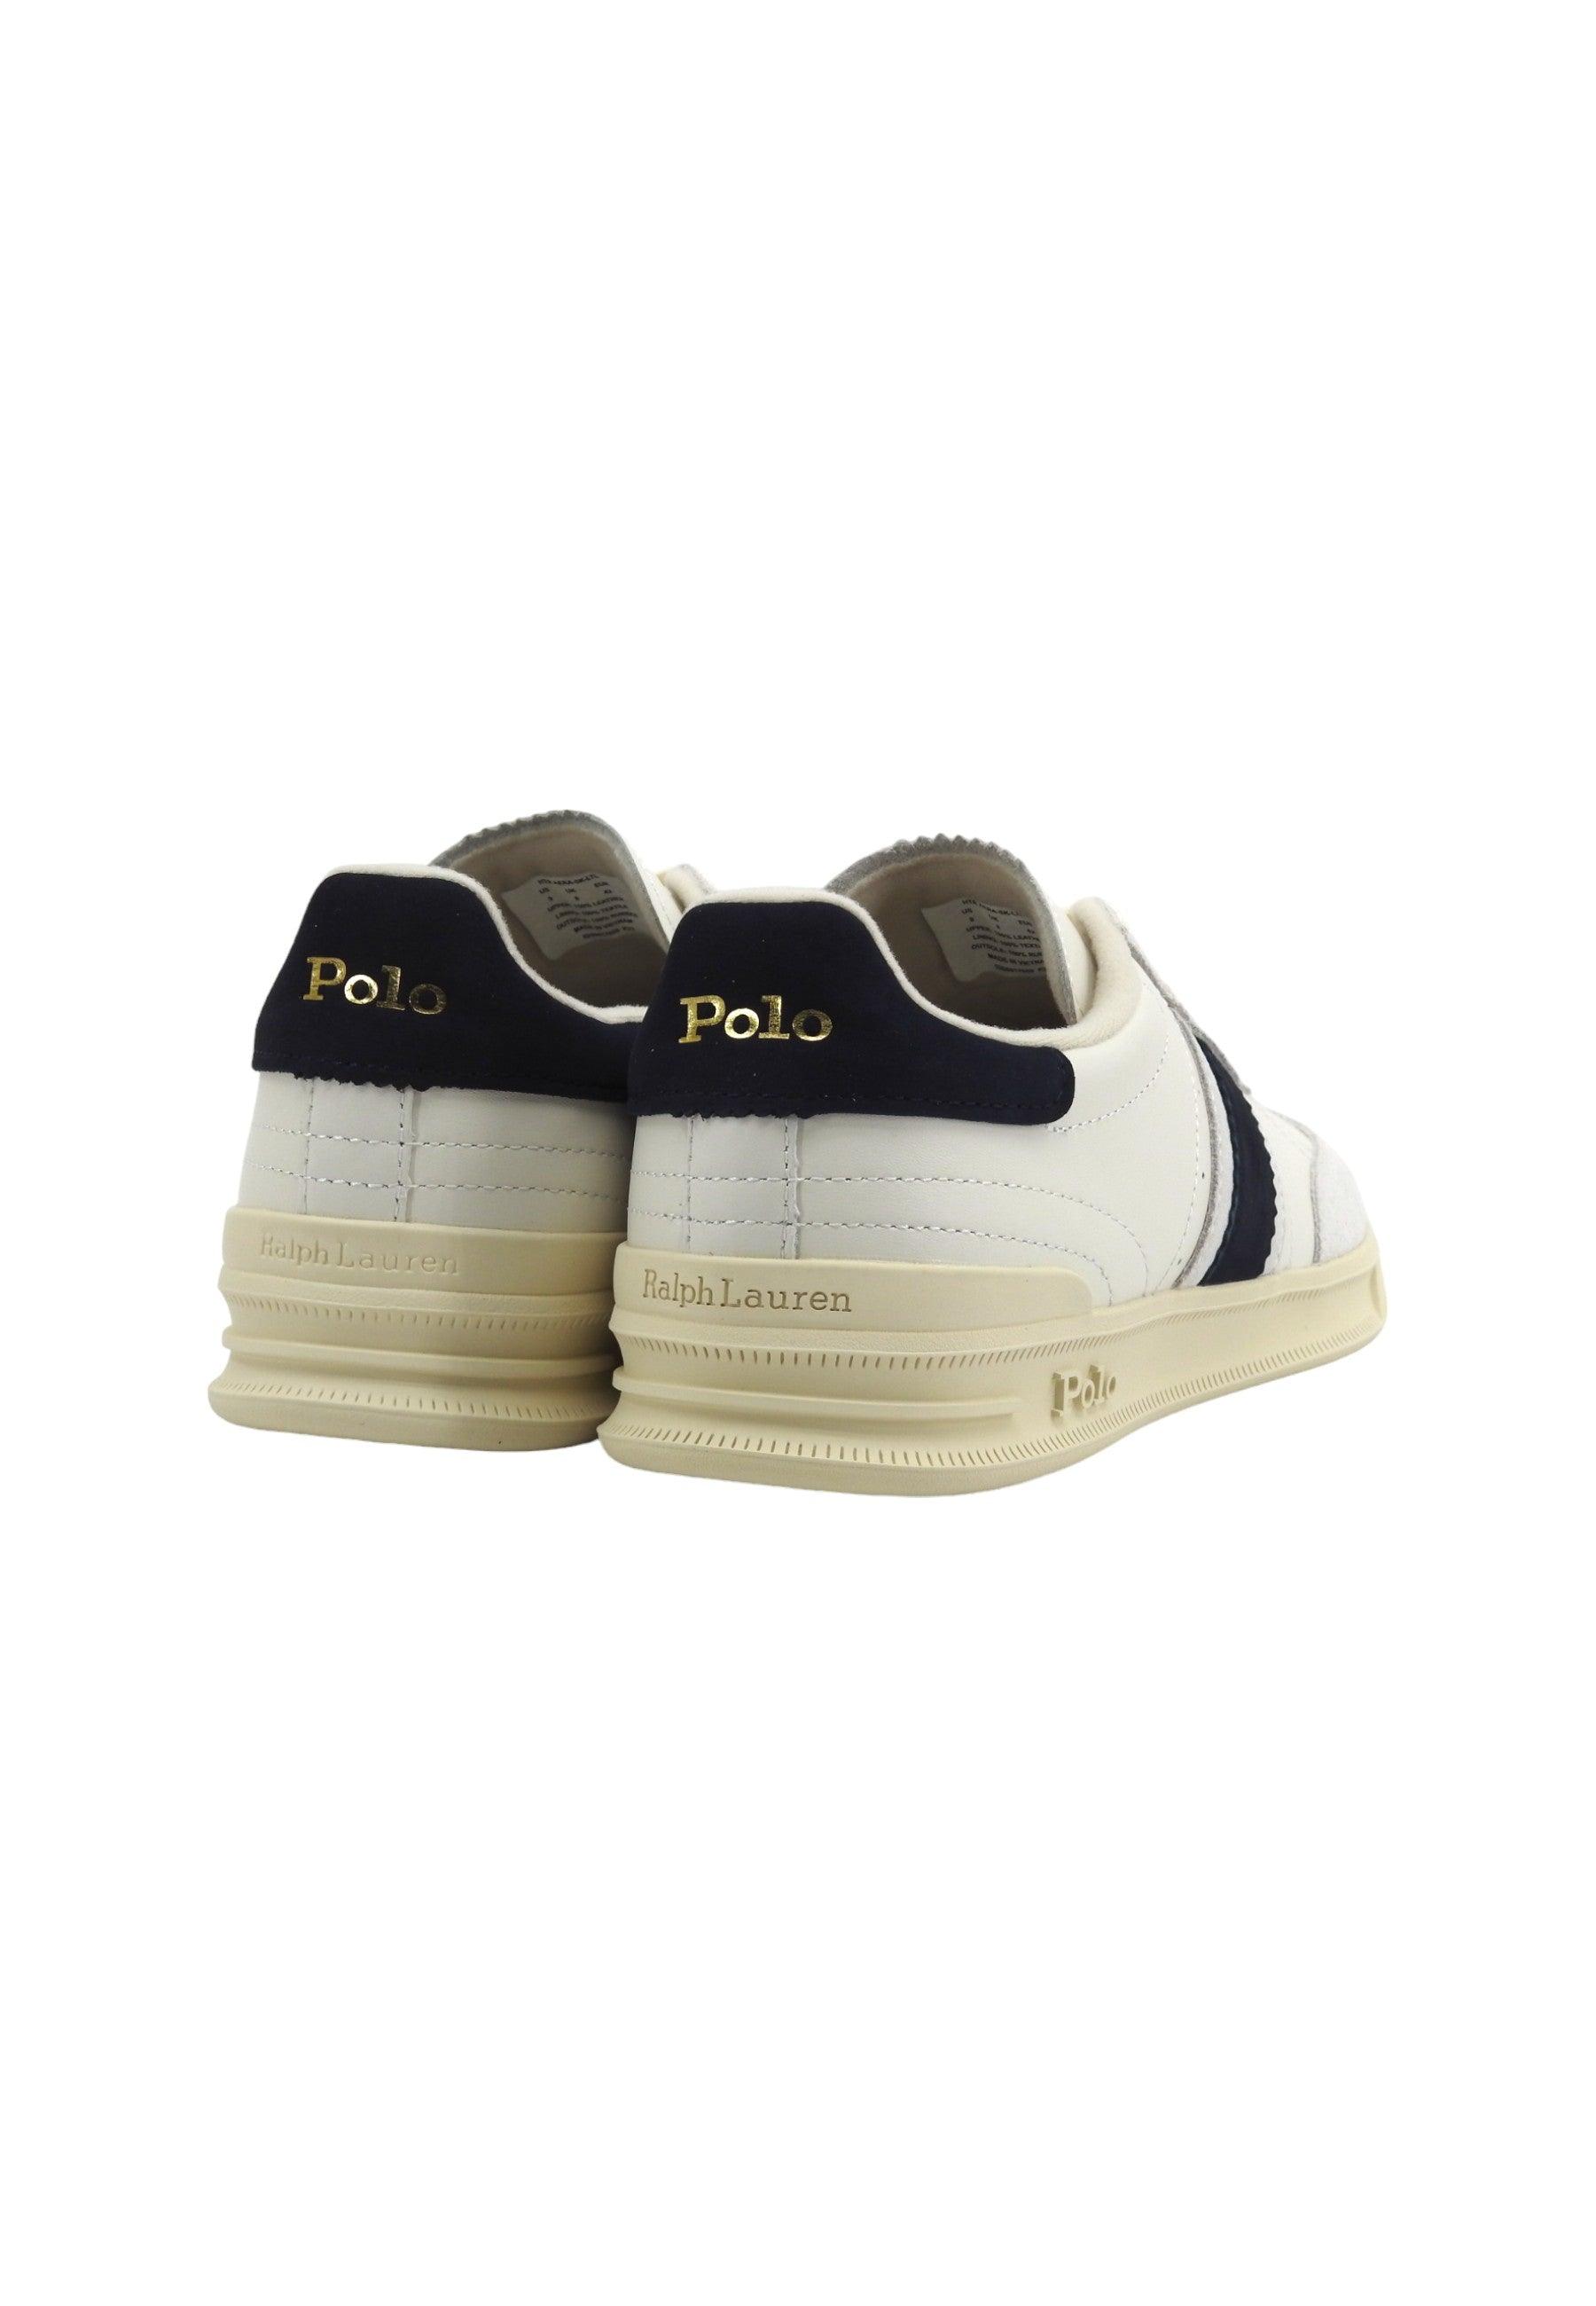 POLO RALPH LAUREN Sneaker Uomo Cream Navy 809931579001 - Sandrini Calzature e Abbigliamento